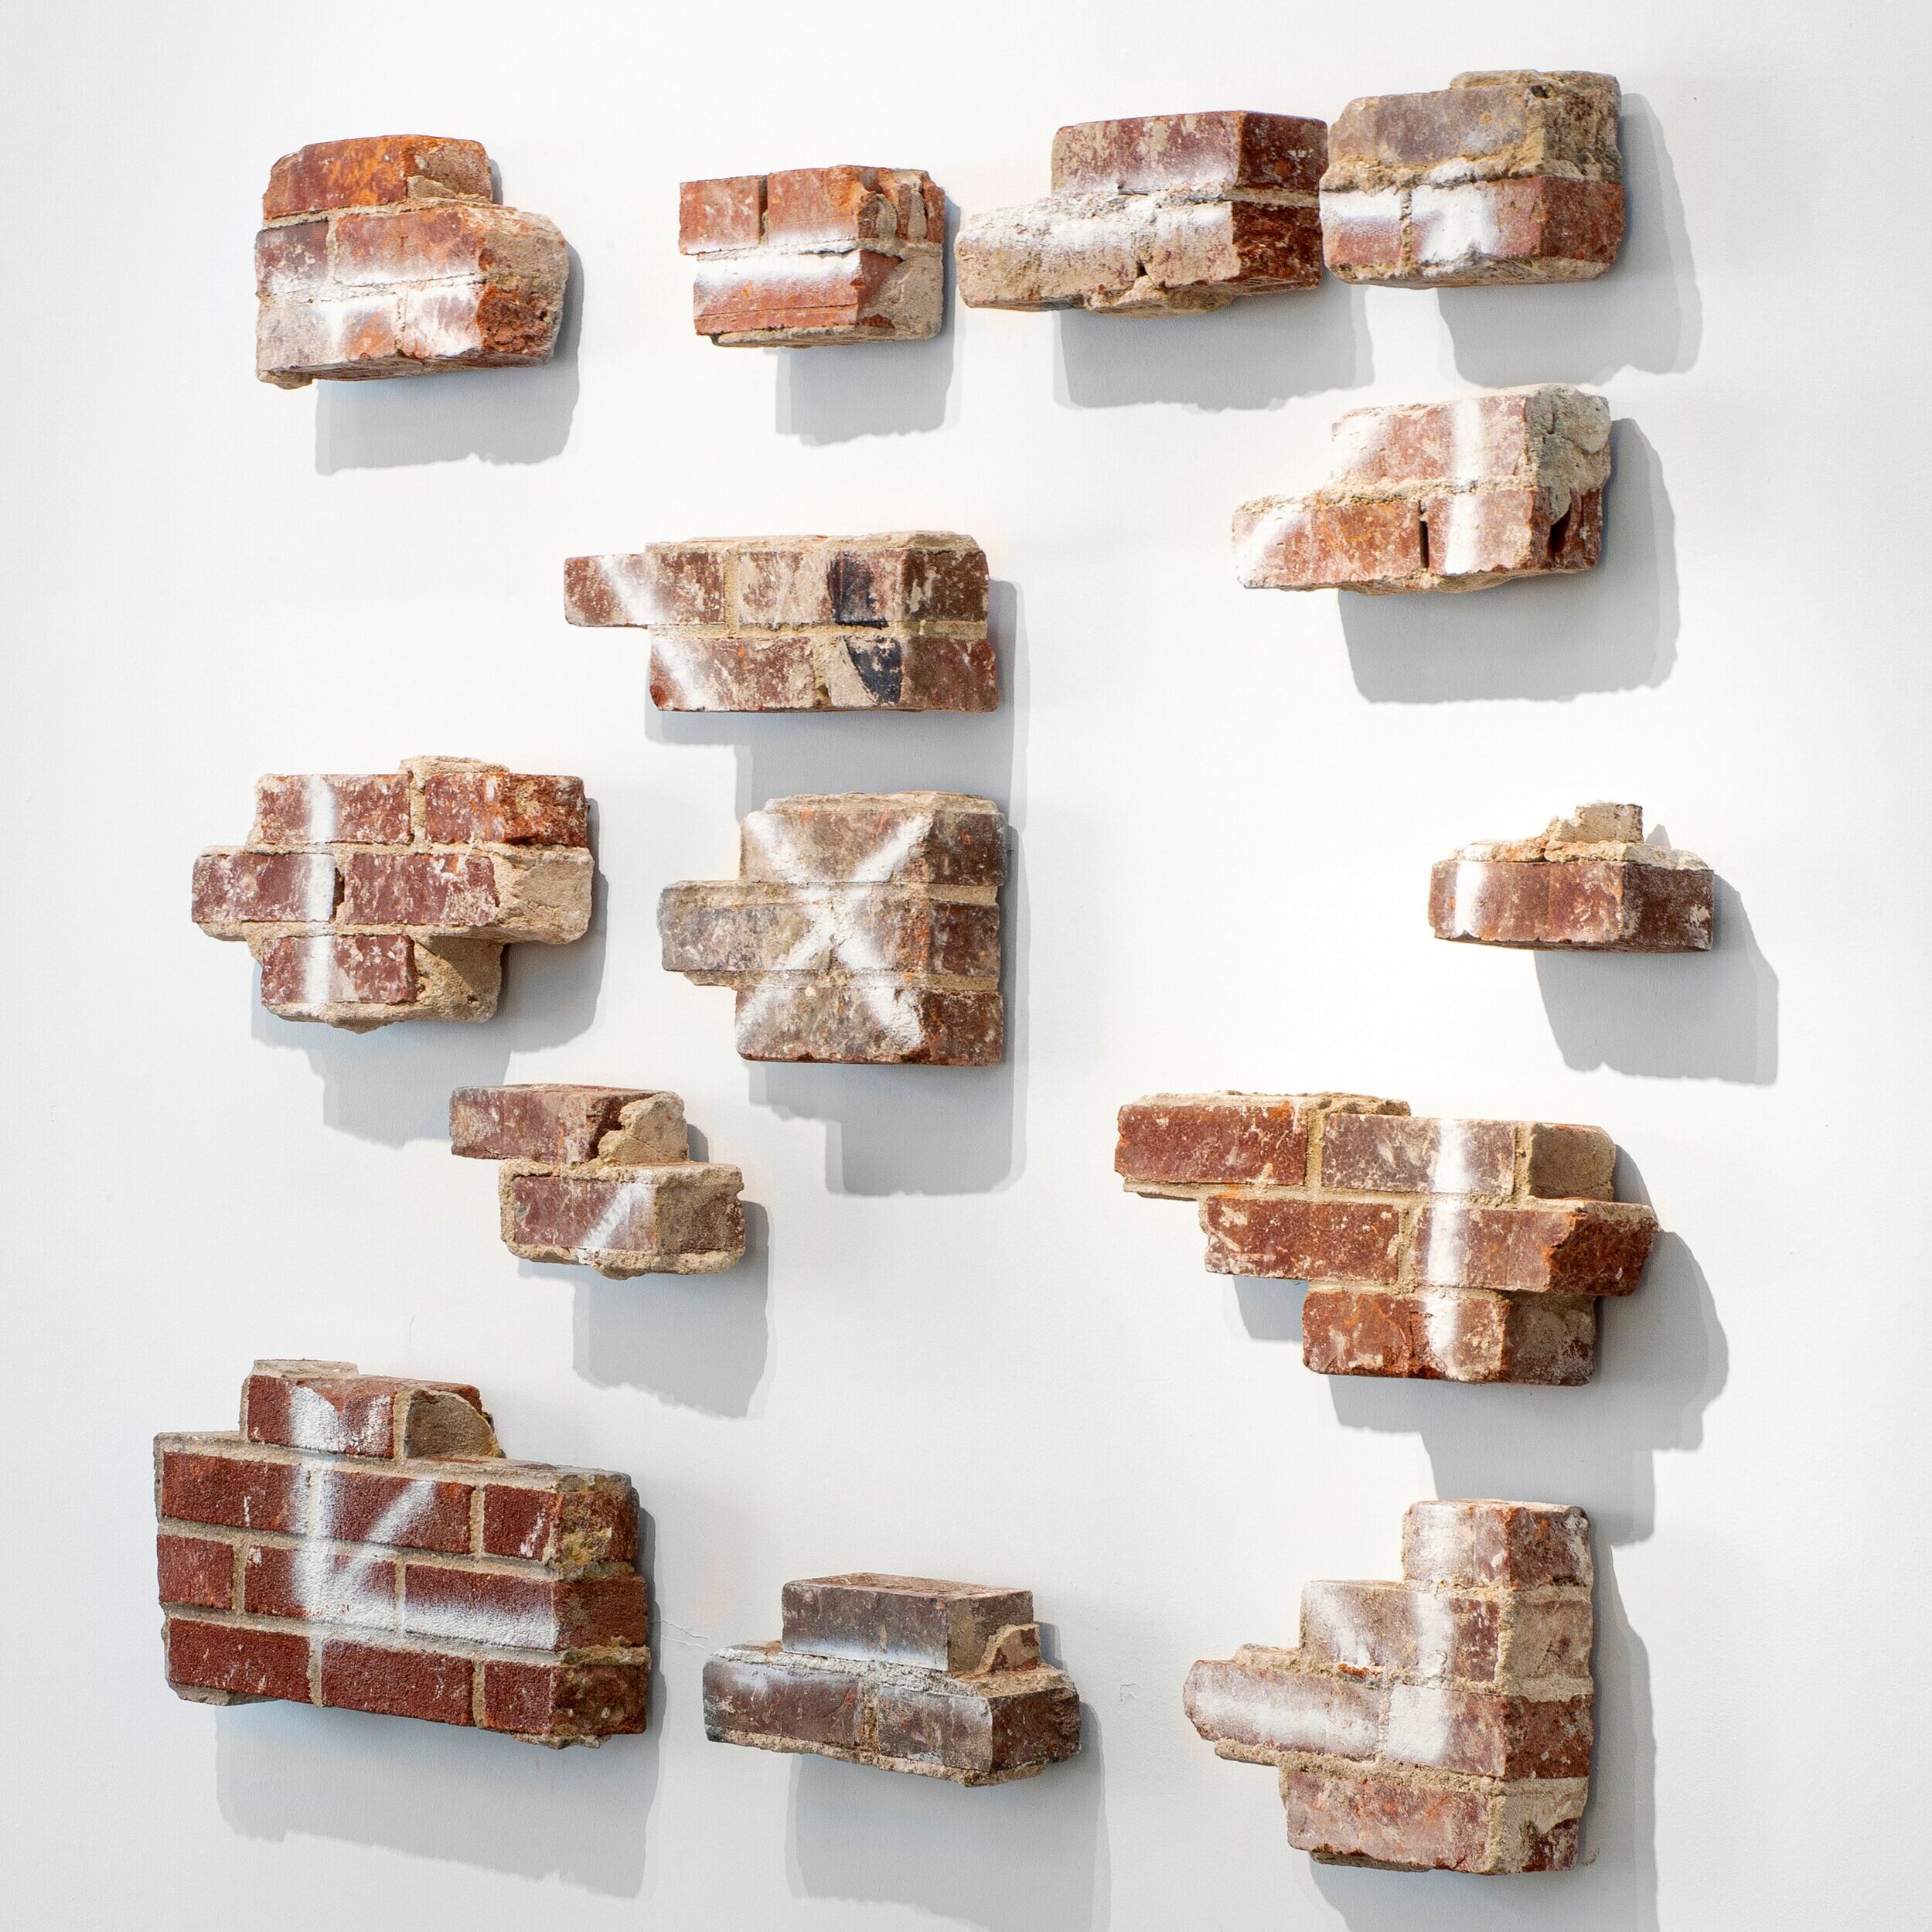   Pablo Rasgado      Ventana   ,  2019 Bricks 52,4 × 66,1 in Piero Atchugarry Gallery 